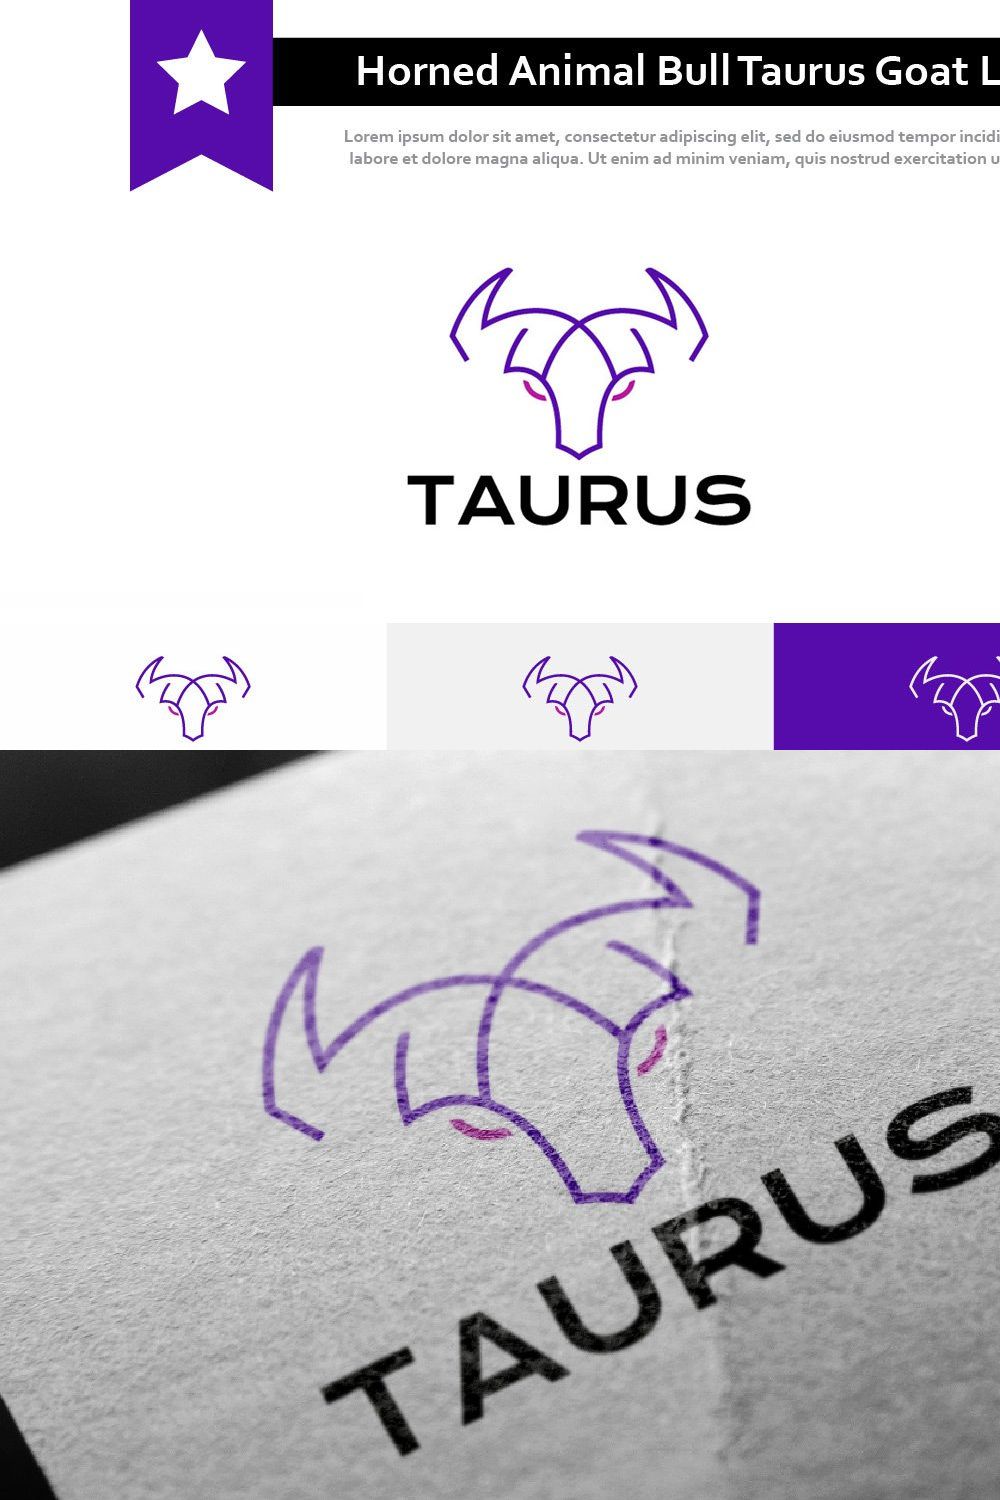 Horned Animal Bull Taurus Goat Logo pinterest preview image.